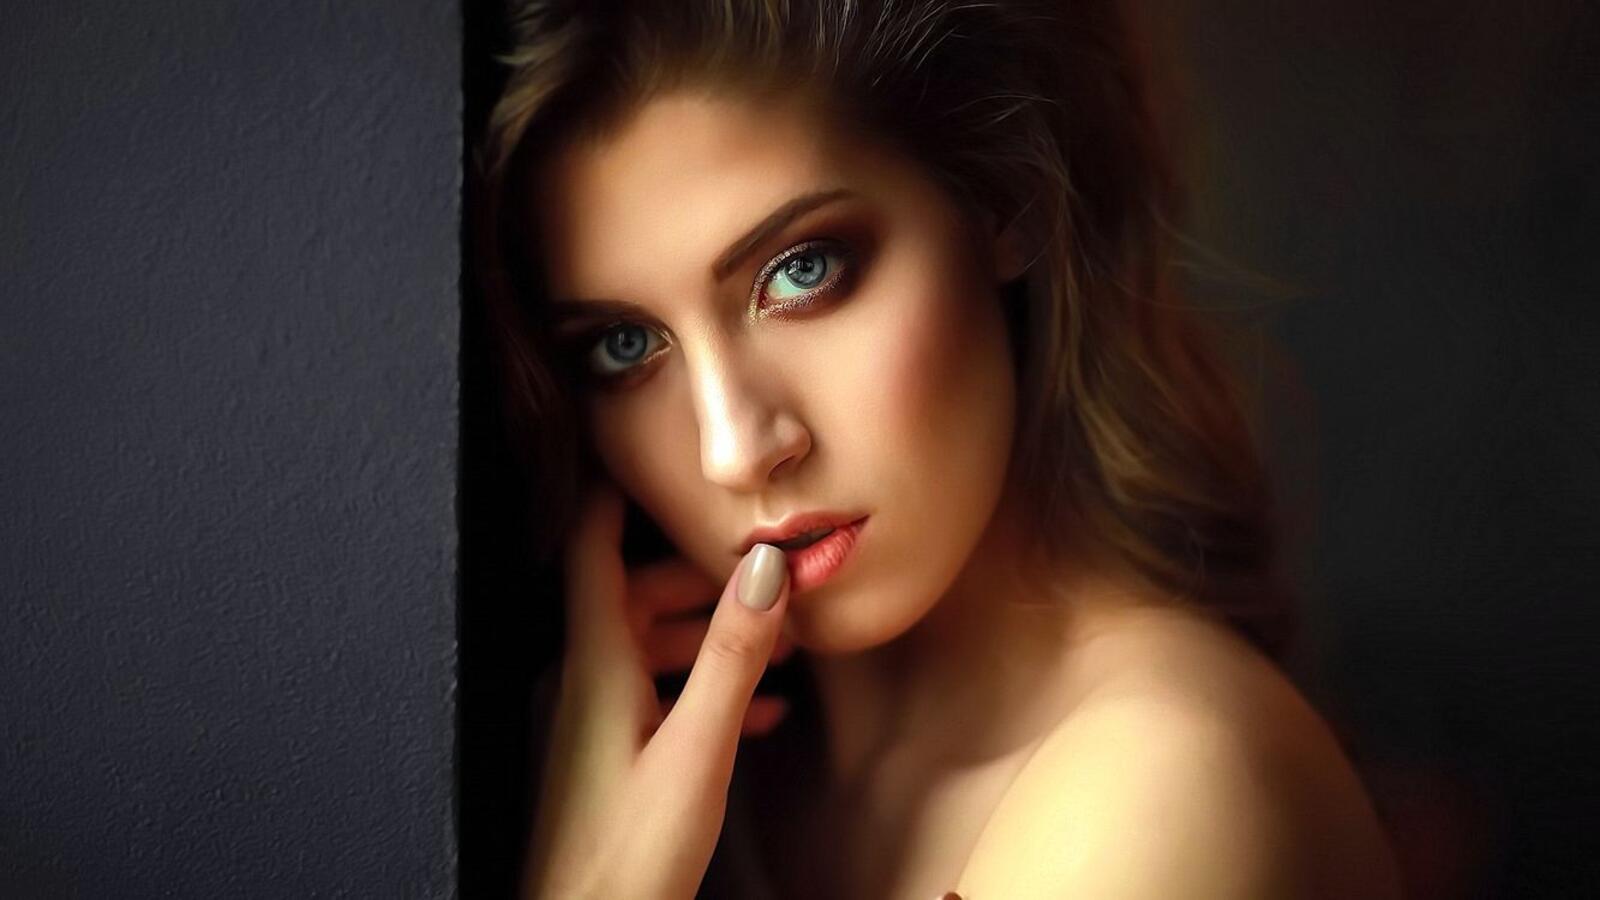 Бесплатное фото Портрет девушки с голубыми глазами